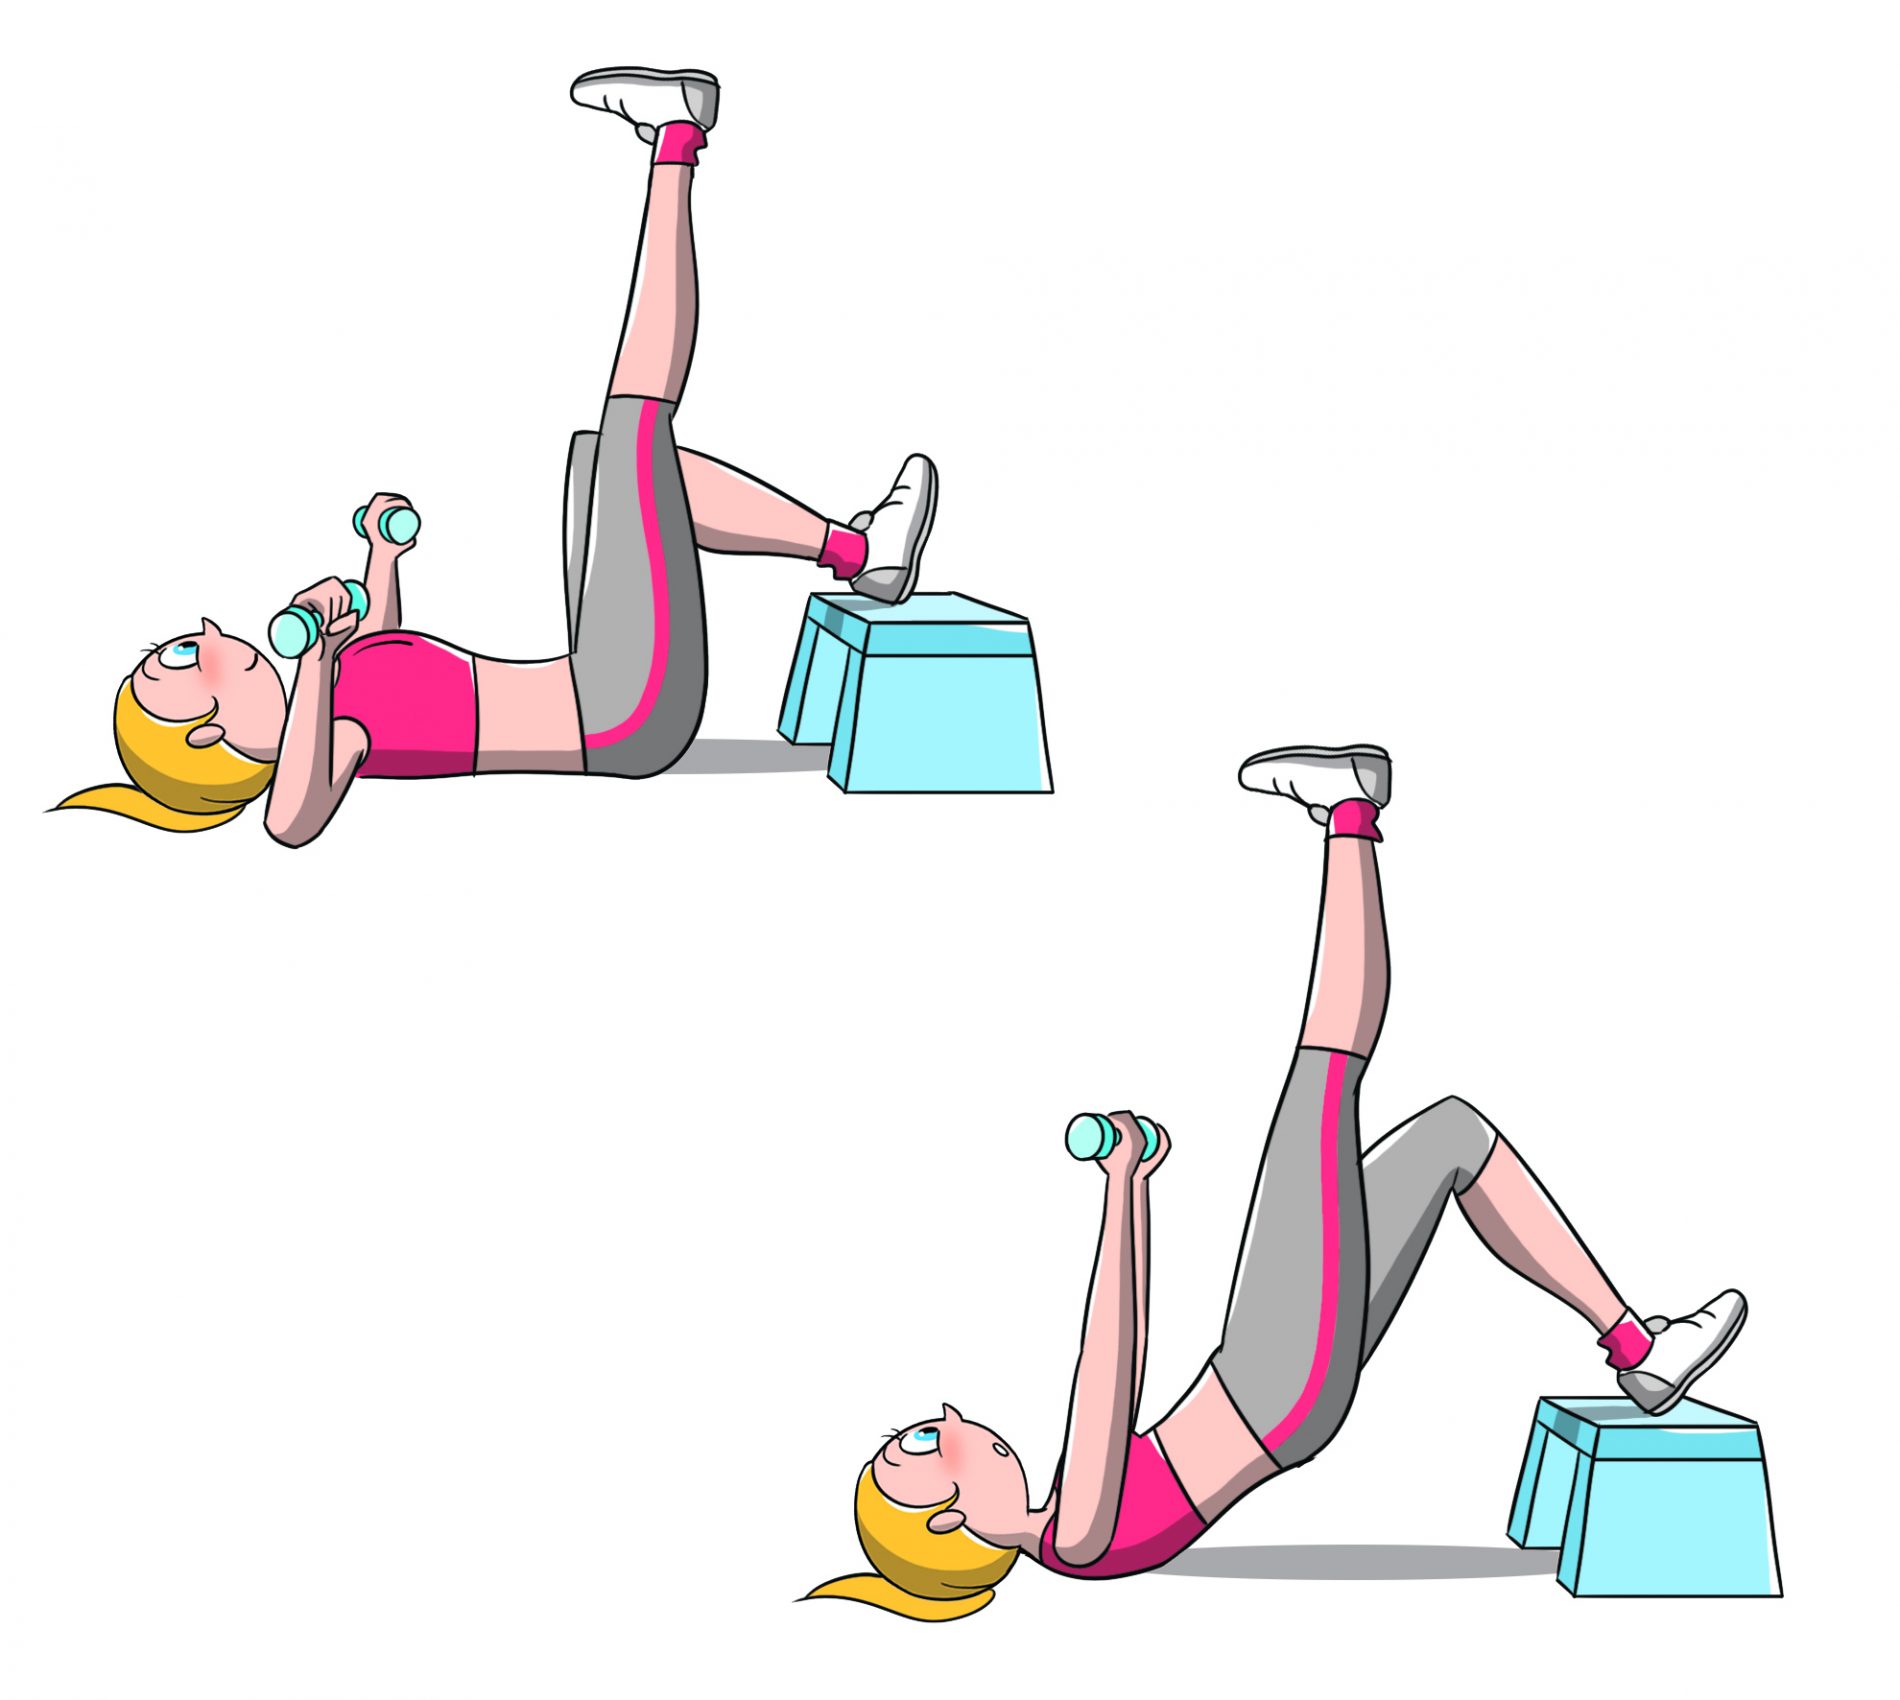 allenamento per fisico a clessidra: esercizio bridge and press